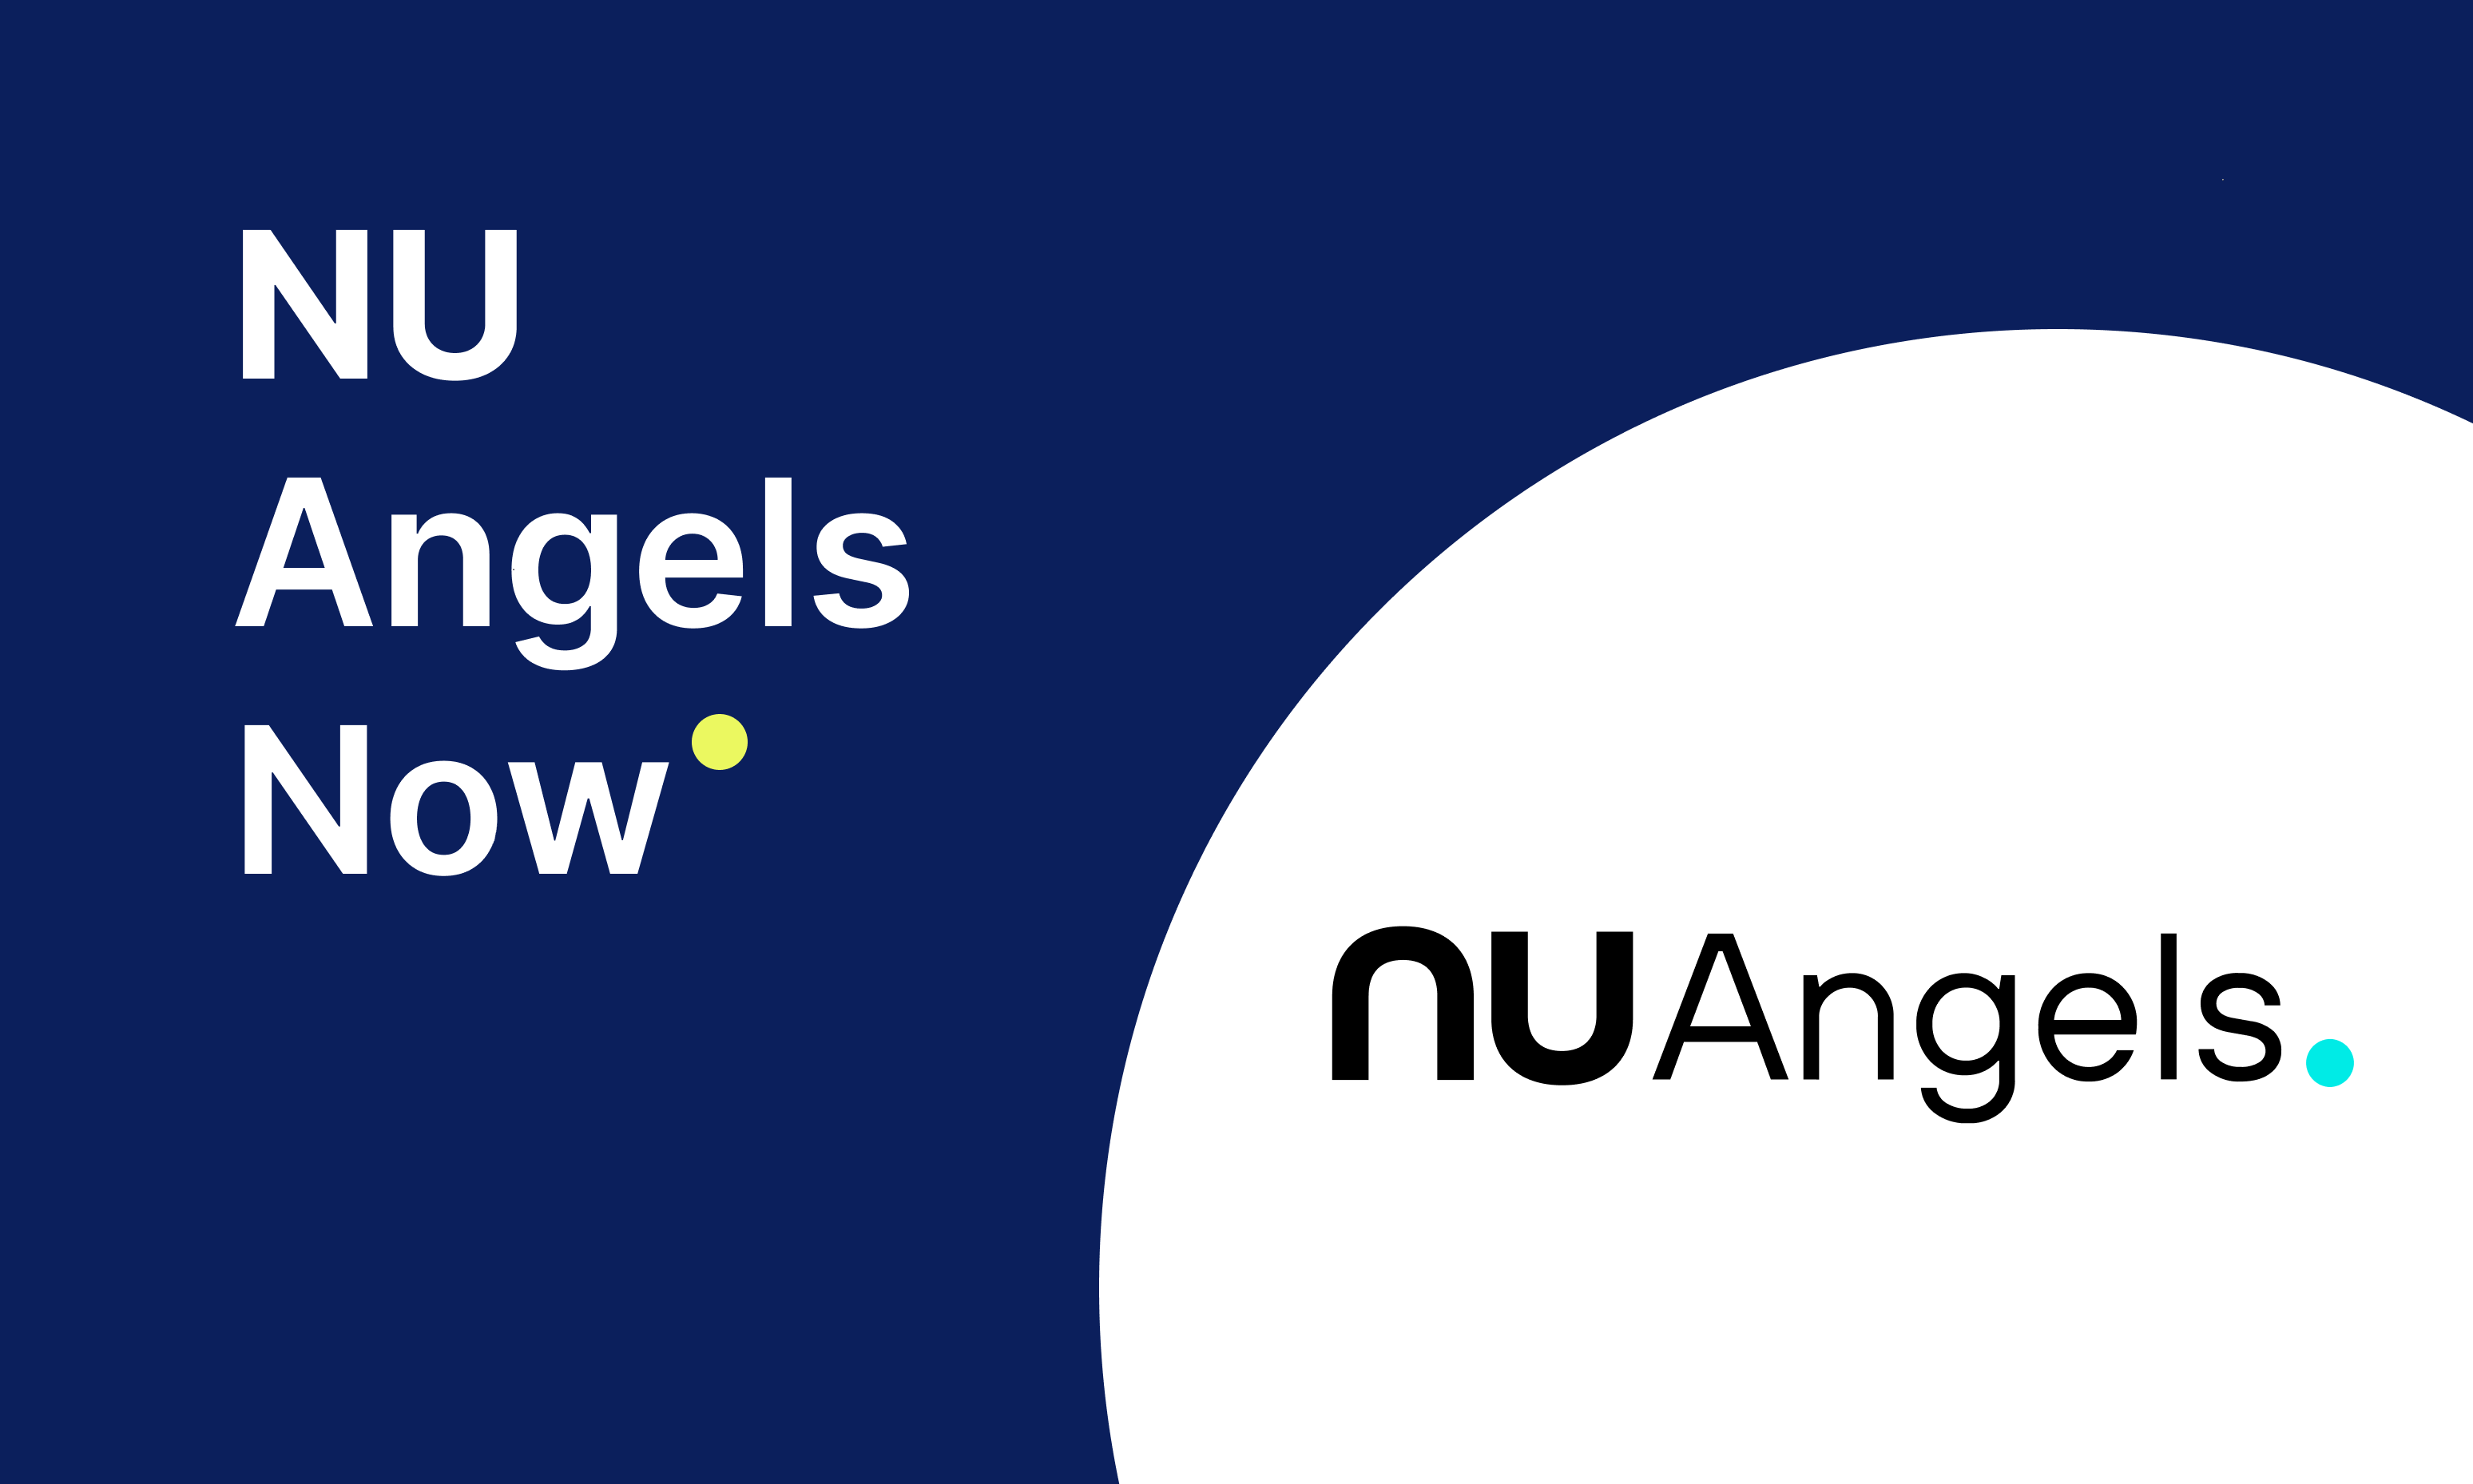 투자 한파 이겨낸 NU Angels 스타트업 소식!